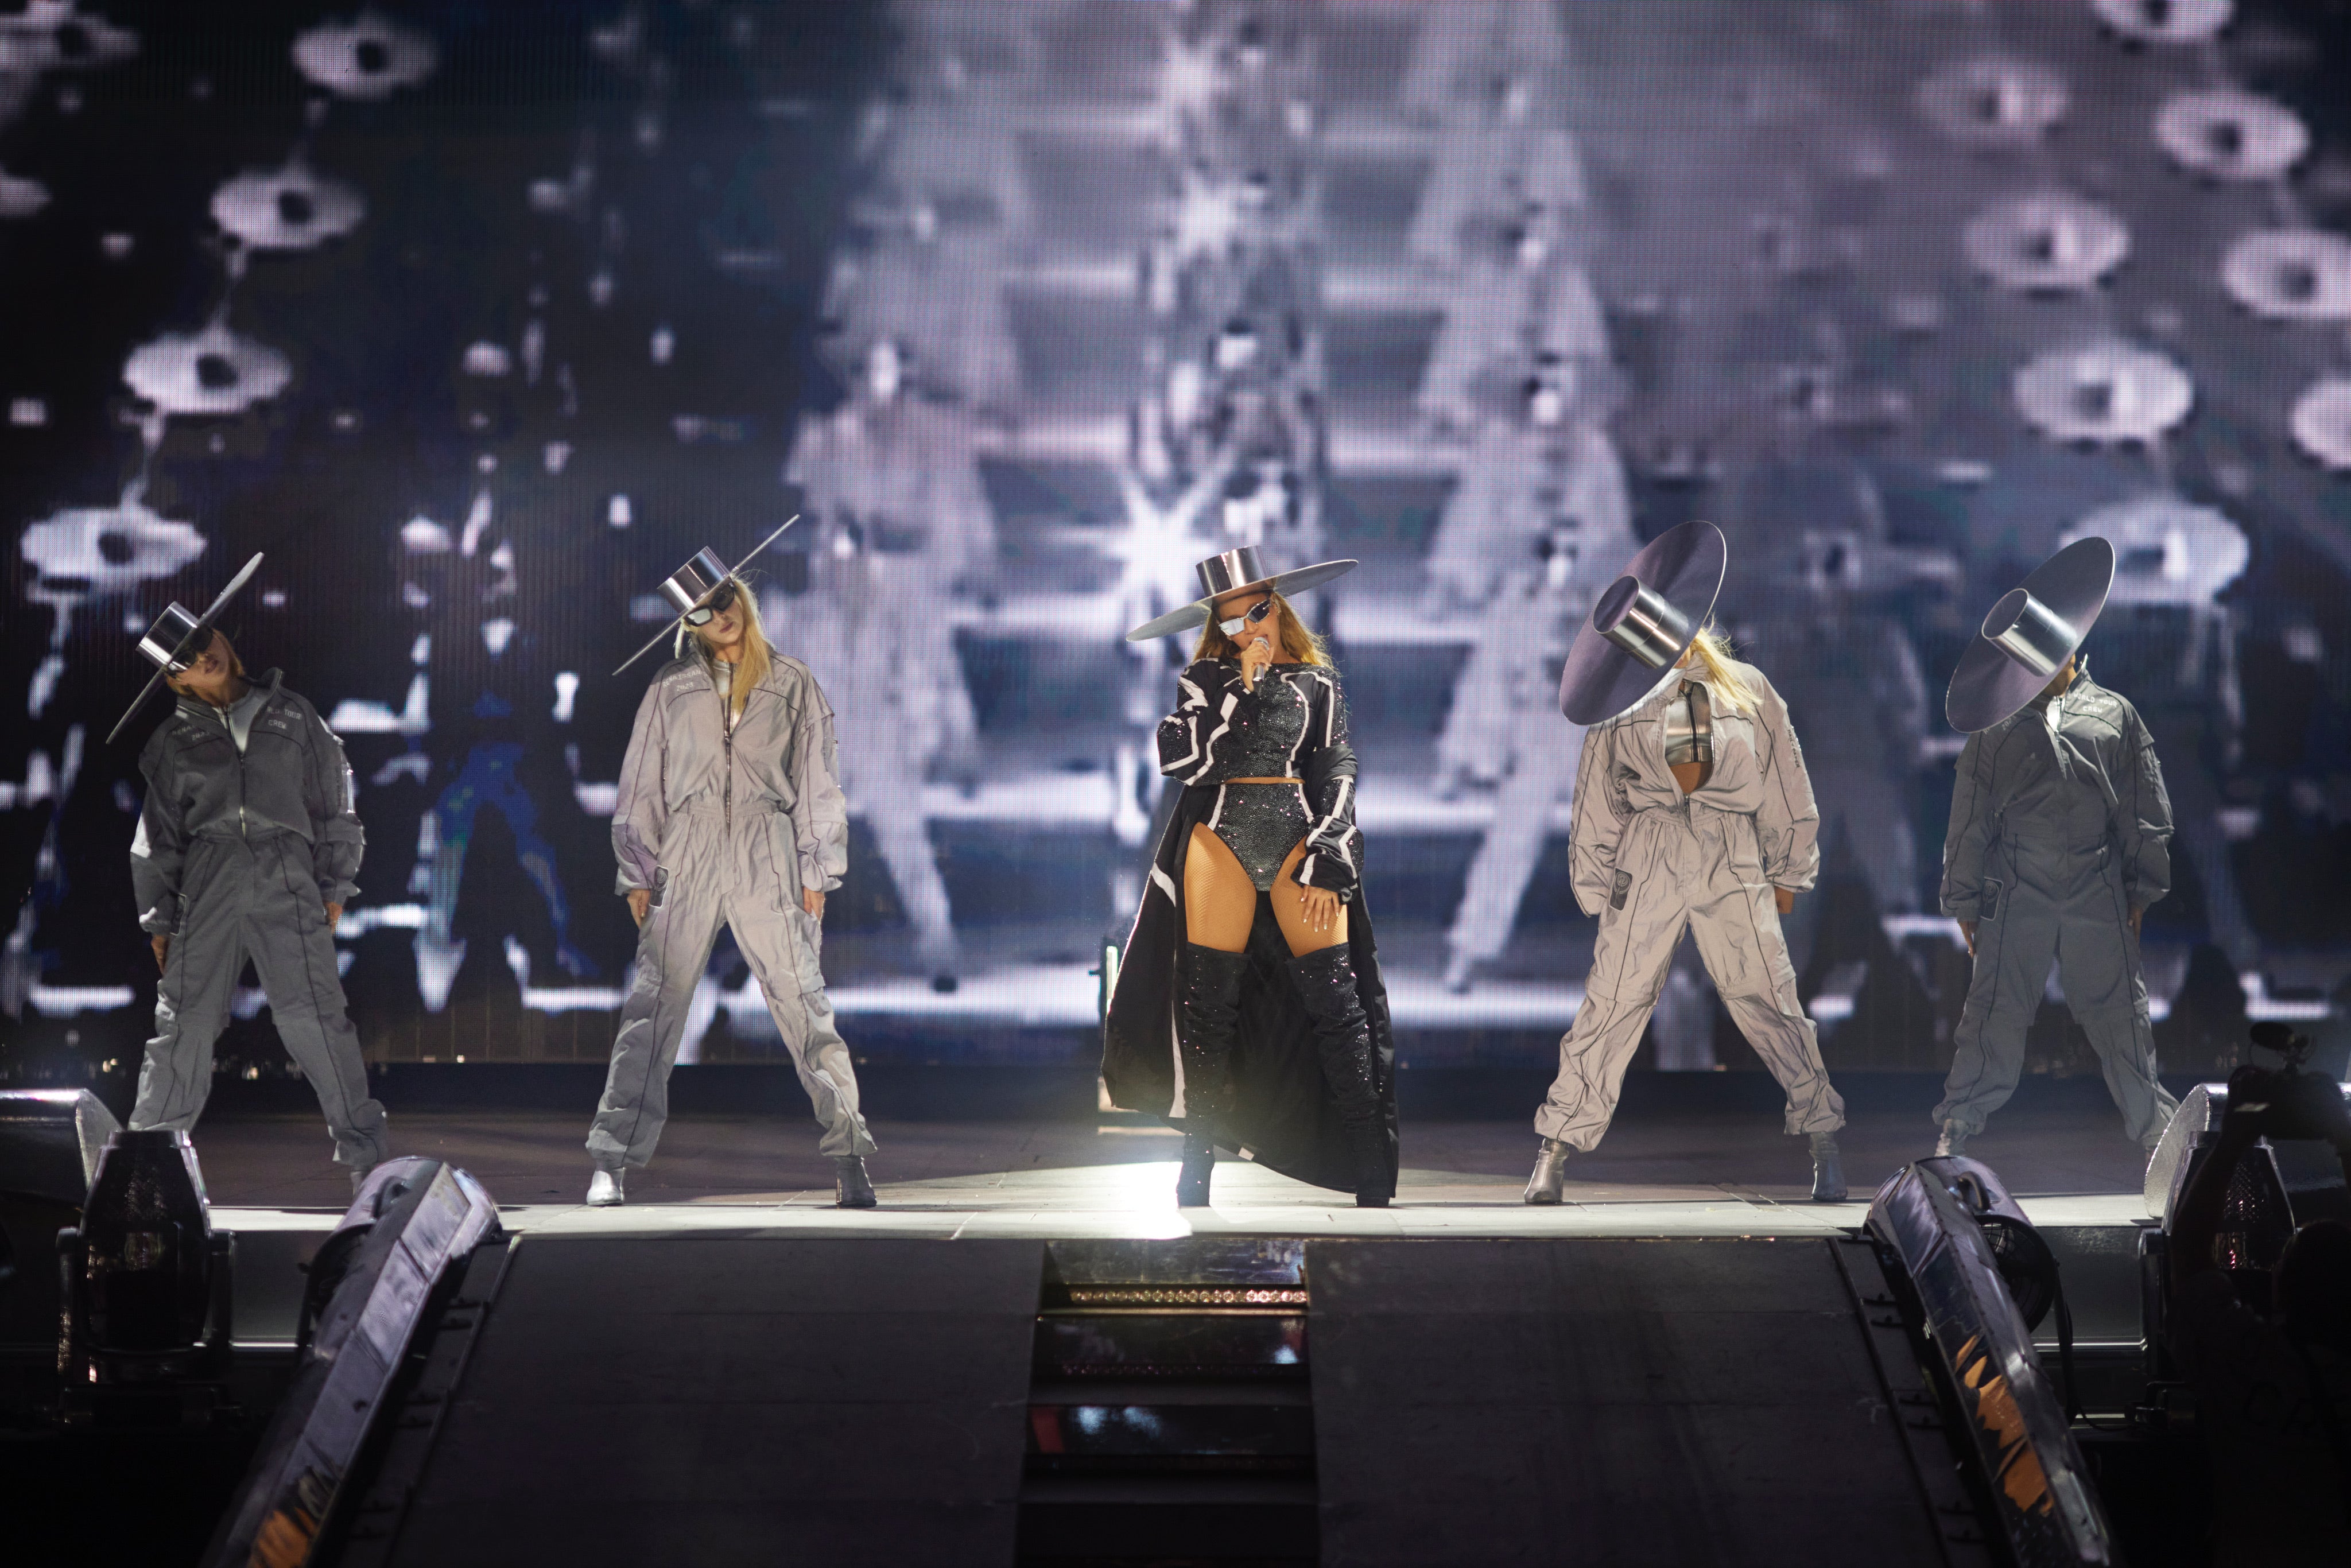 Daily Paper Designs Custom Uniforms And More For Beyoncé's Renaissance World Tour